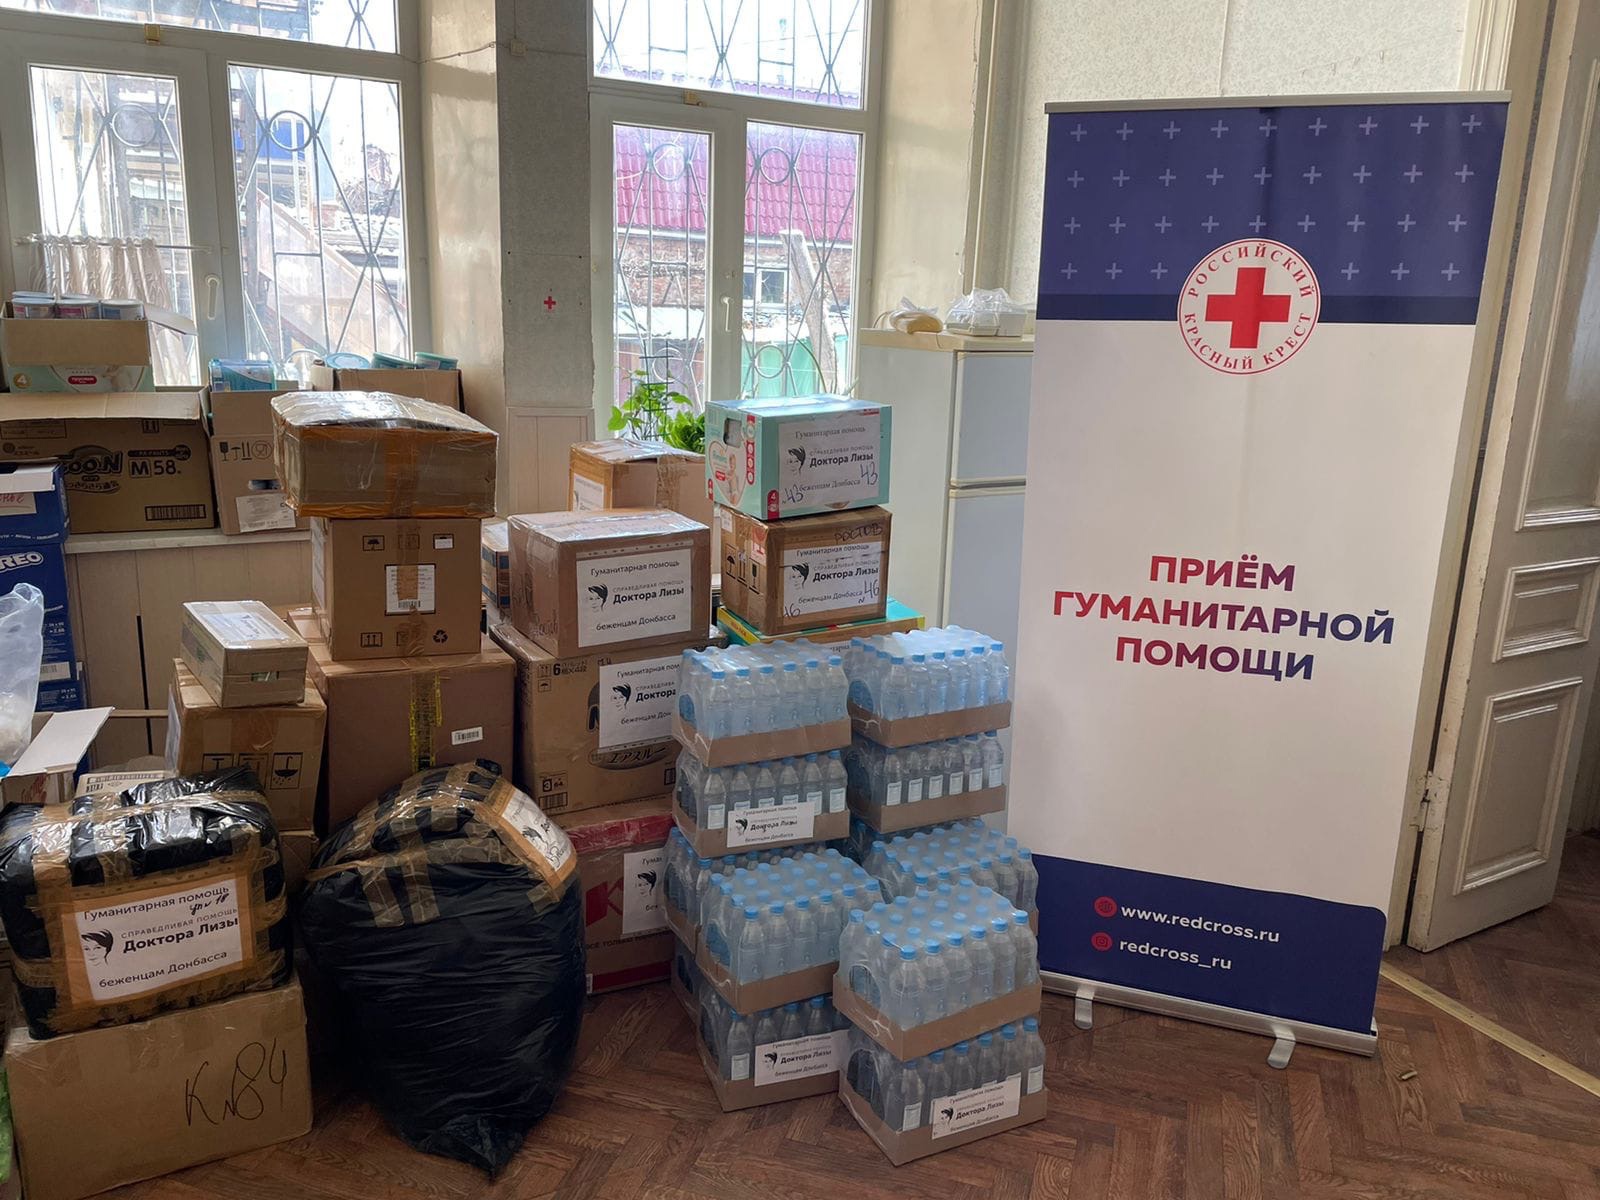 Гуманитарная помощь что нужно. Гуманитарная помощь. Гуманитарная помощь Донбассу. Гуманитарная помощь надпись. Прием гуманитарной помощи.